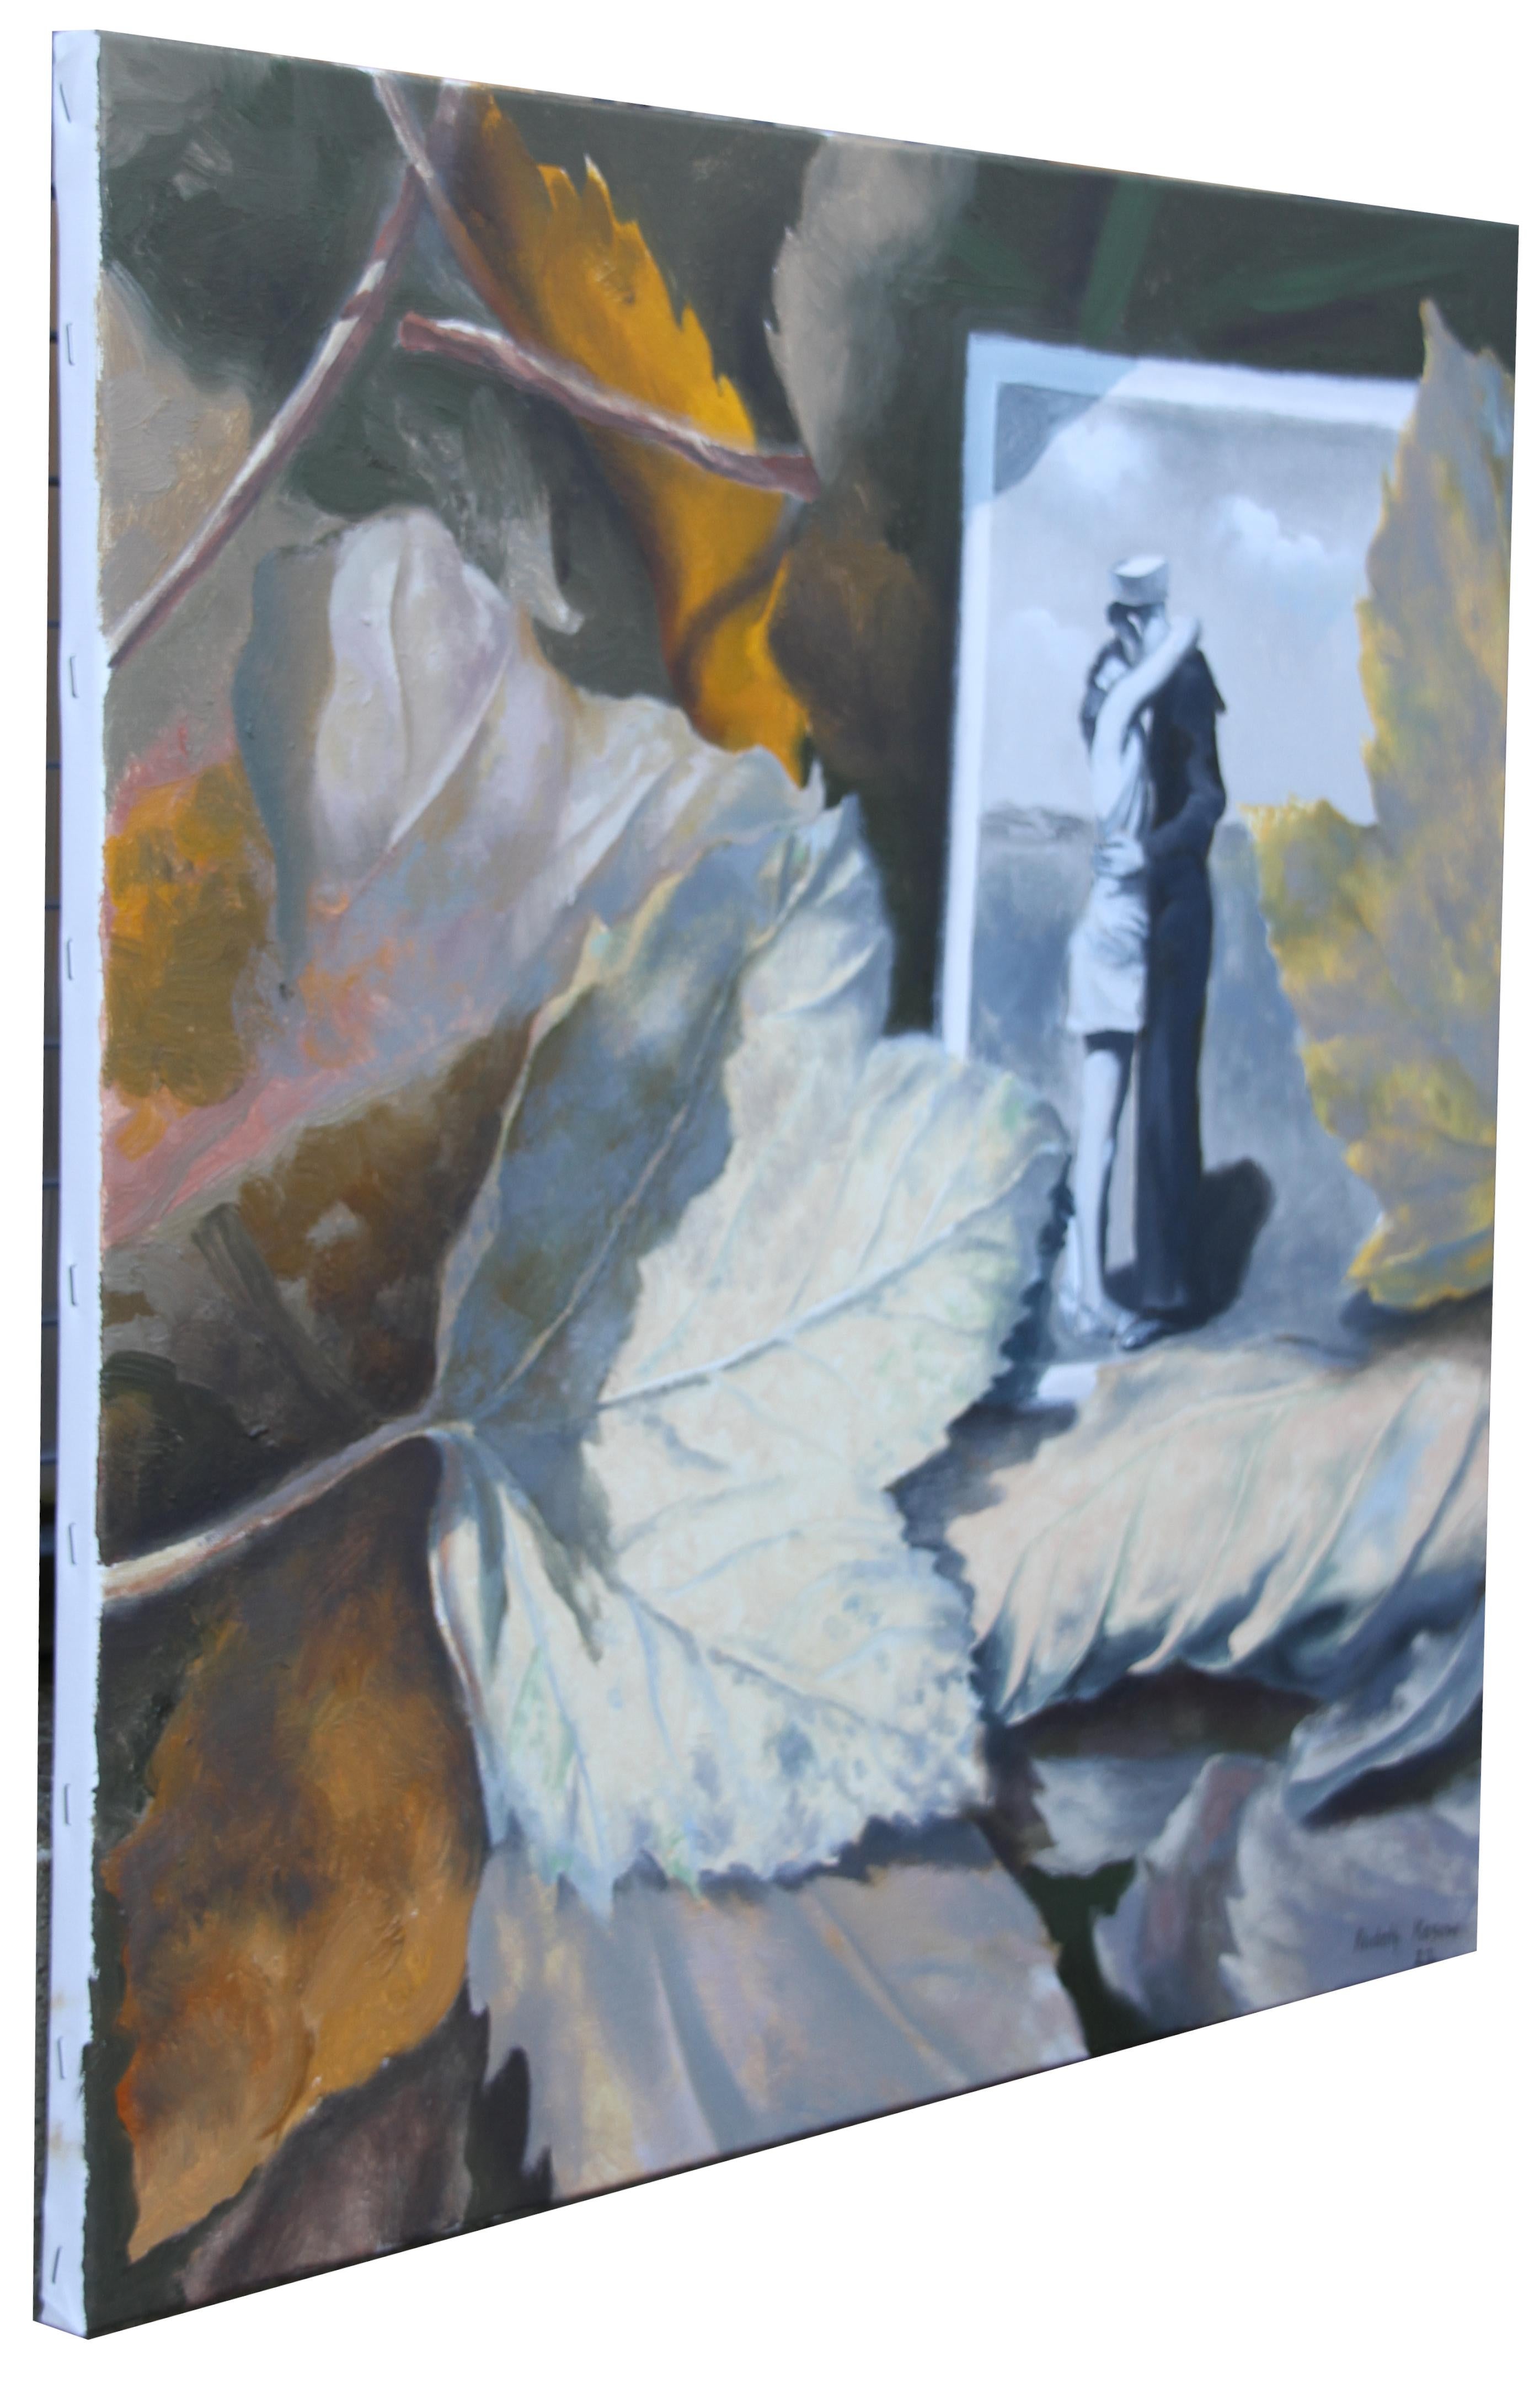 LOVERS AND AUTUMN LEAVES ist ein wunderschönes Originalgemälde auf Leinwand, das ein Stillleben mit Herbstblättern neben einem Vintage-Schwarz-Weiß-Foto eines Paares in liebevoller Umarmung zeigt.

Stichworte; Erdtöne, Herbstblatt,